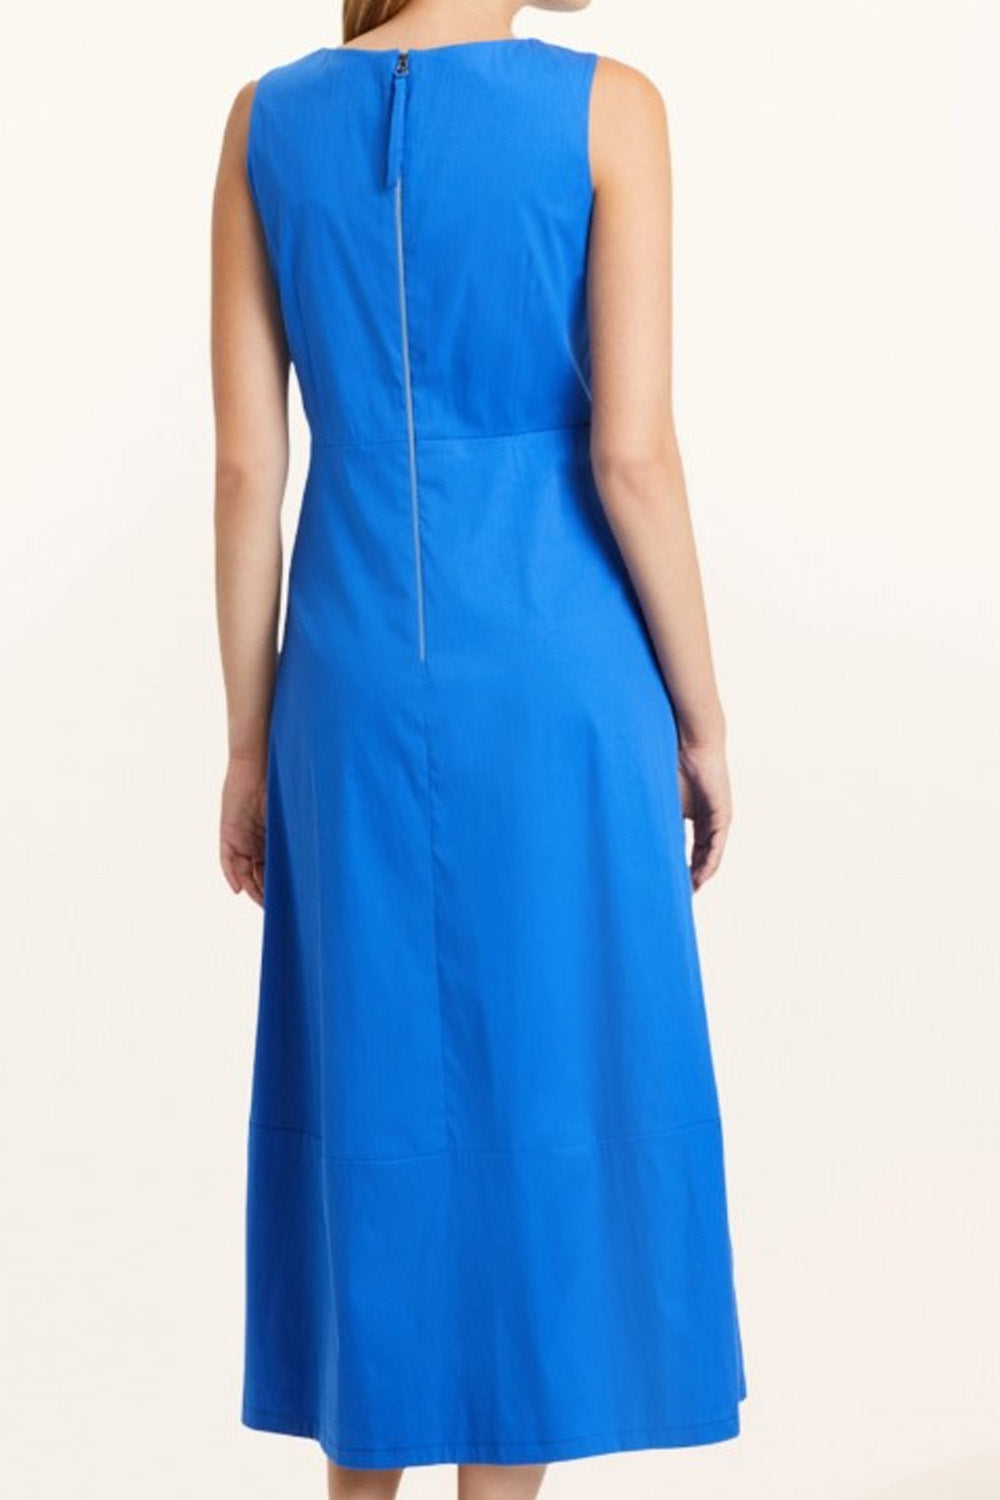 Primitive Blue Dress